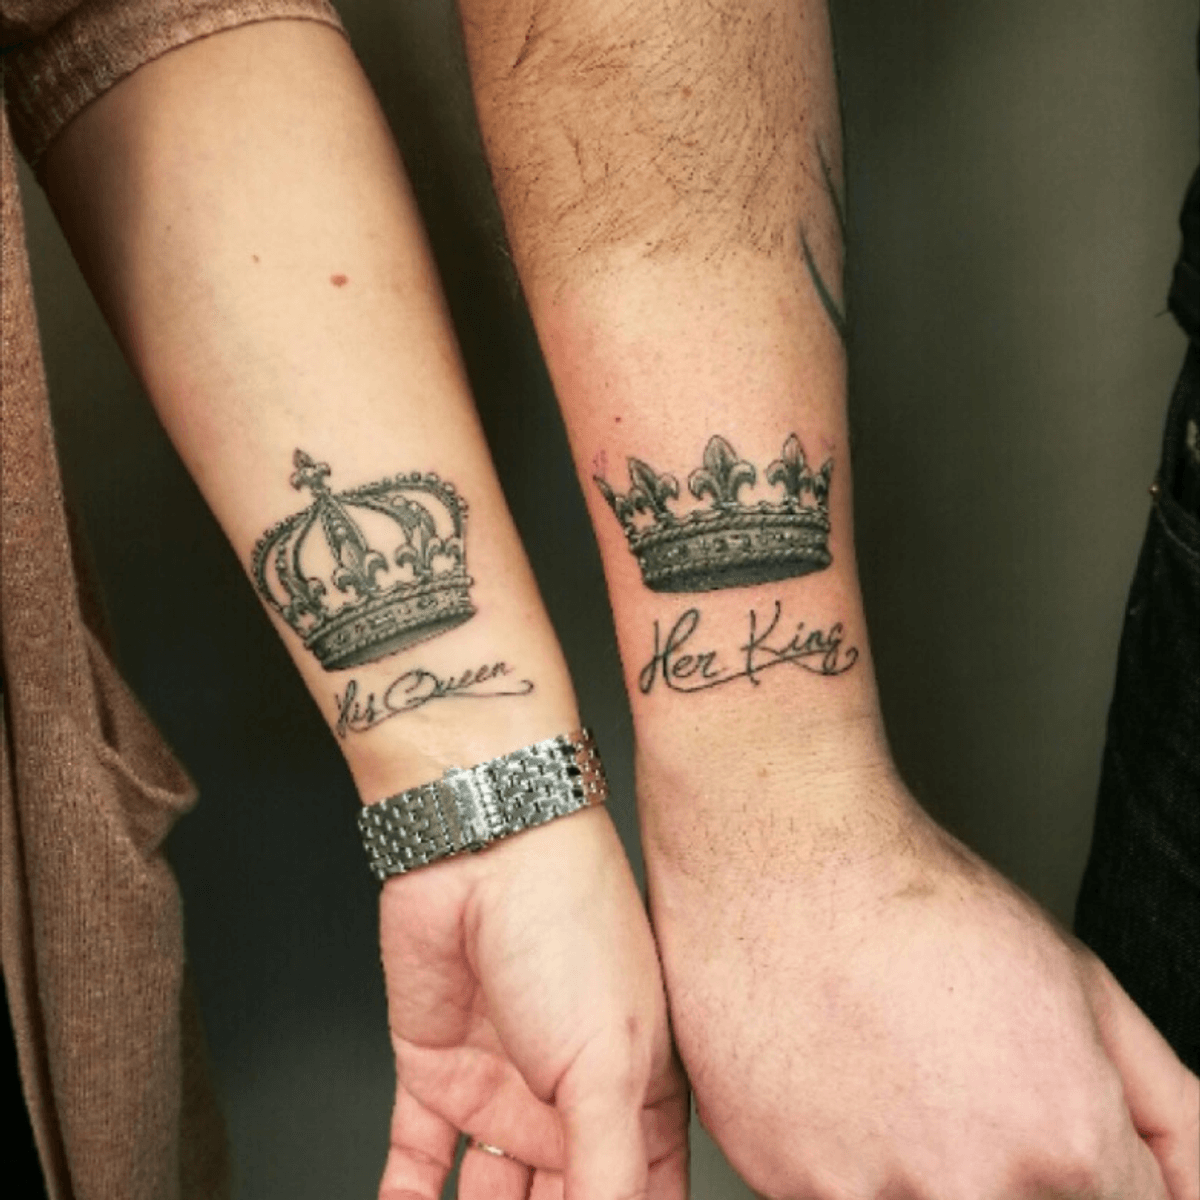 Tattoo uploaded by Contrast Ink Tattoo • Her king / His queen tattoo!  #kingandqueen #tattoo #tattoodo #welovegreatink #ink #contrastinktattoo  #sandefjord #tattoostudio #tattoobyarildflatebo #trend #trendytattoo •  Tattoodo